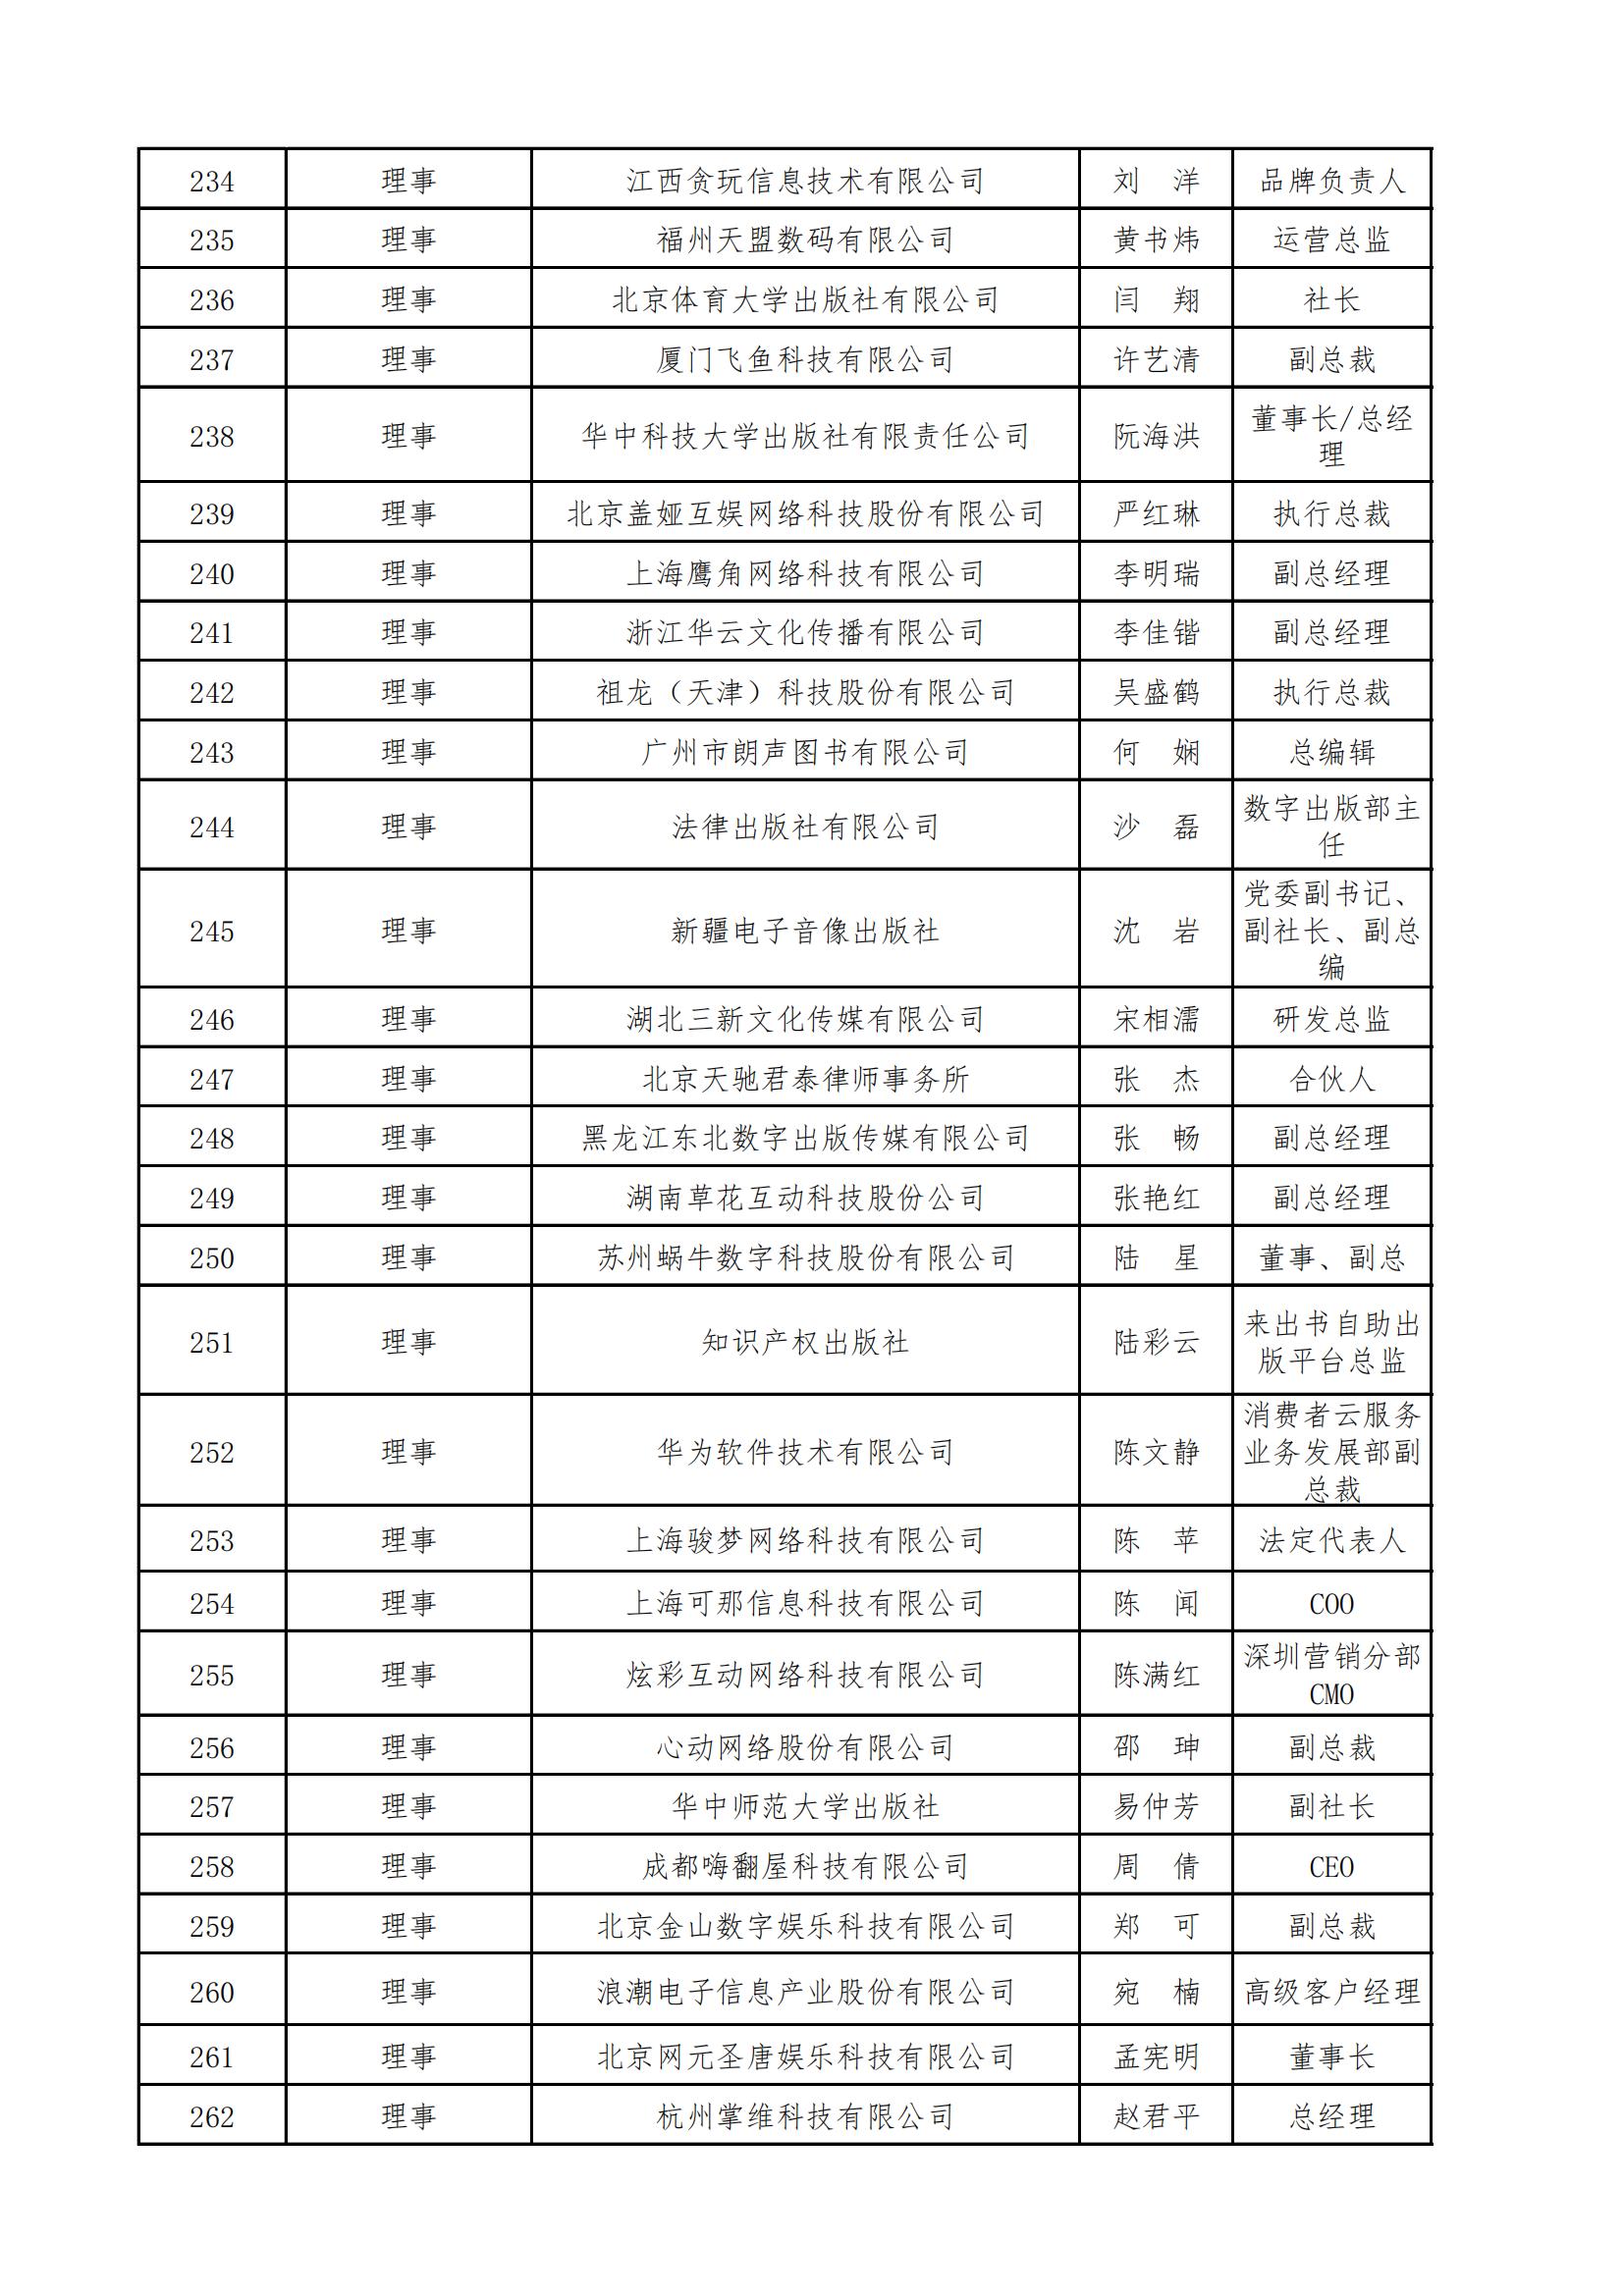 中國音像與數字出版協會第五屆理事會名錄_08.jpg